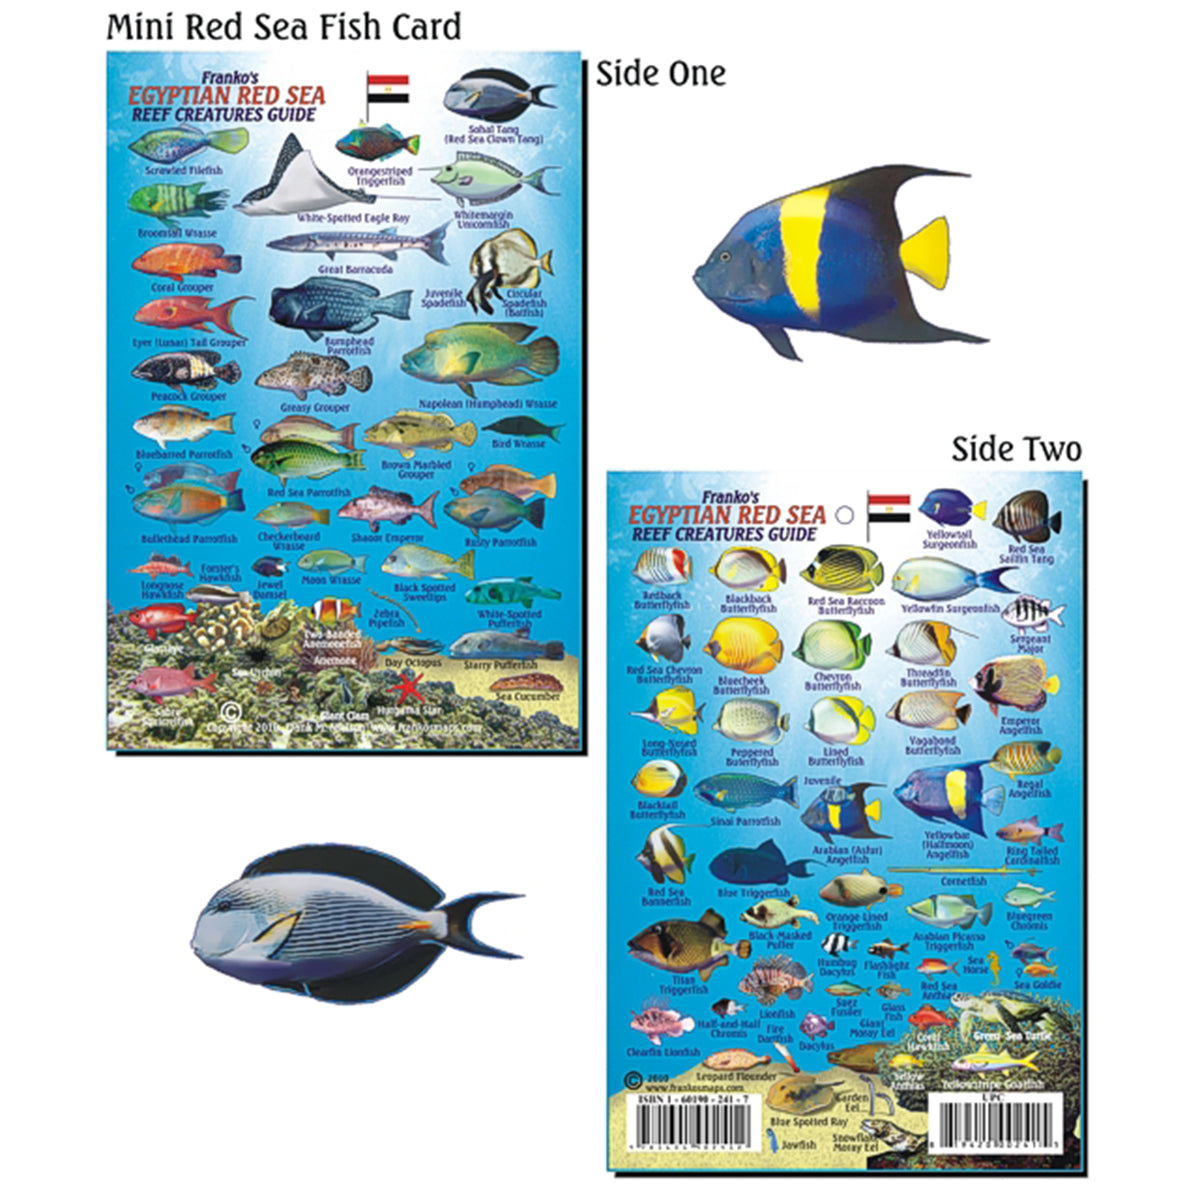 Flyve drage Officer Fremskreden Franko Maps Egyptian Red Sea Reef Creature Guide 4 X 6 Inch – Shop709.com